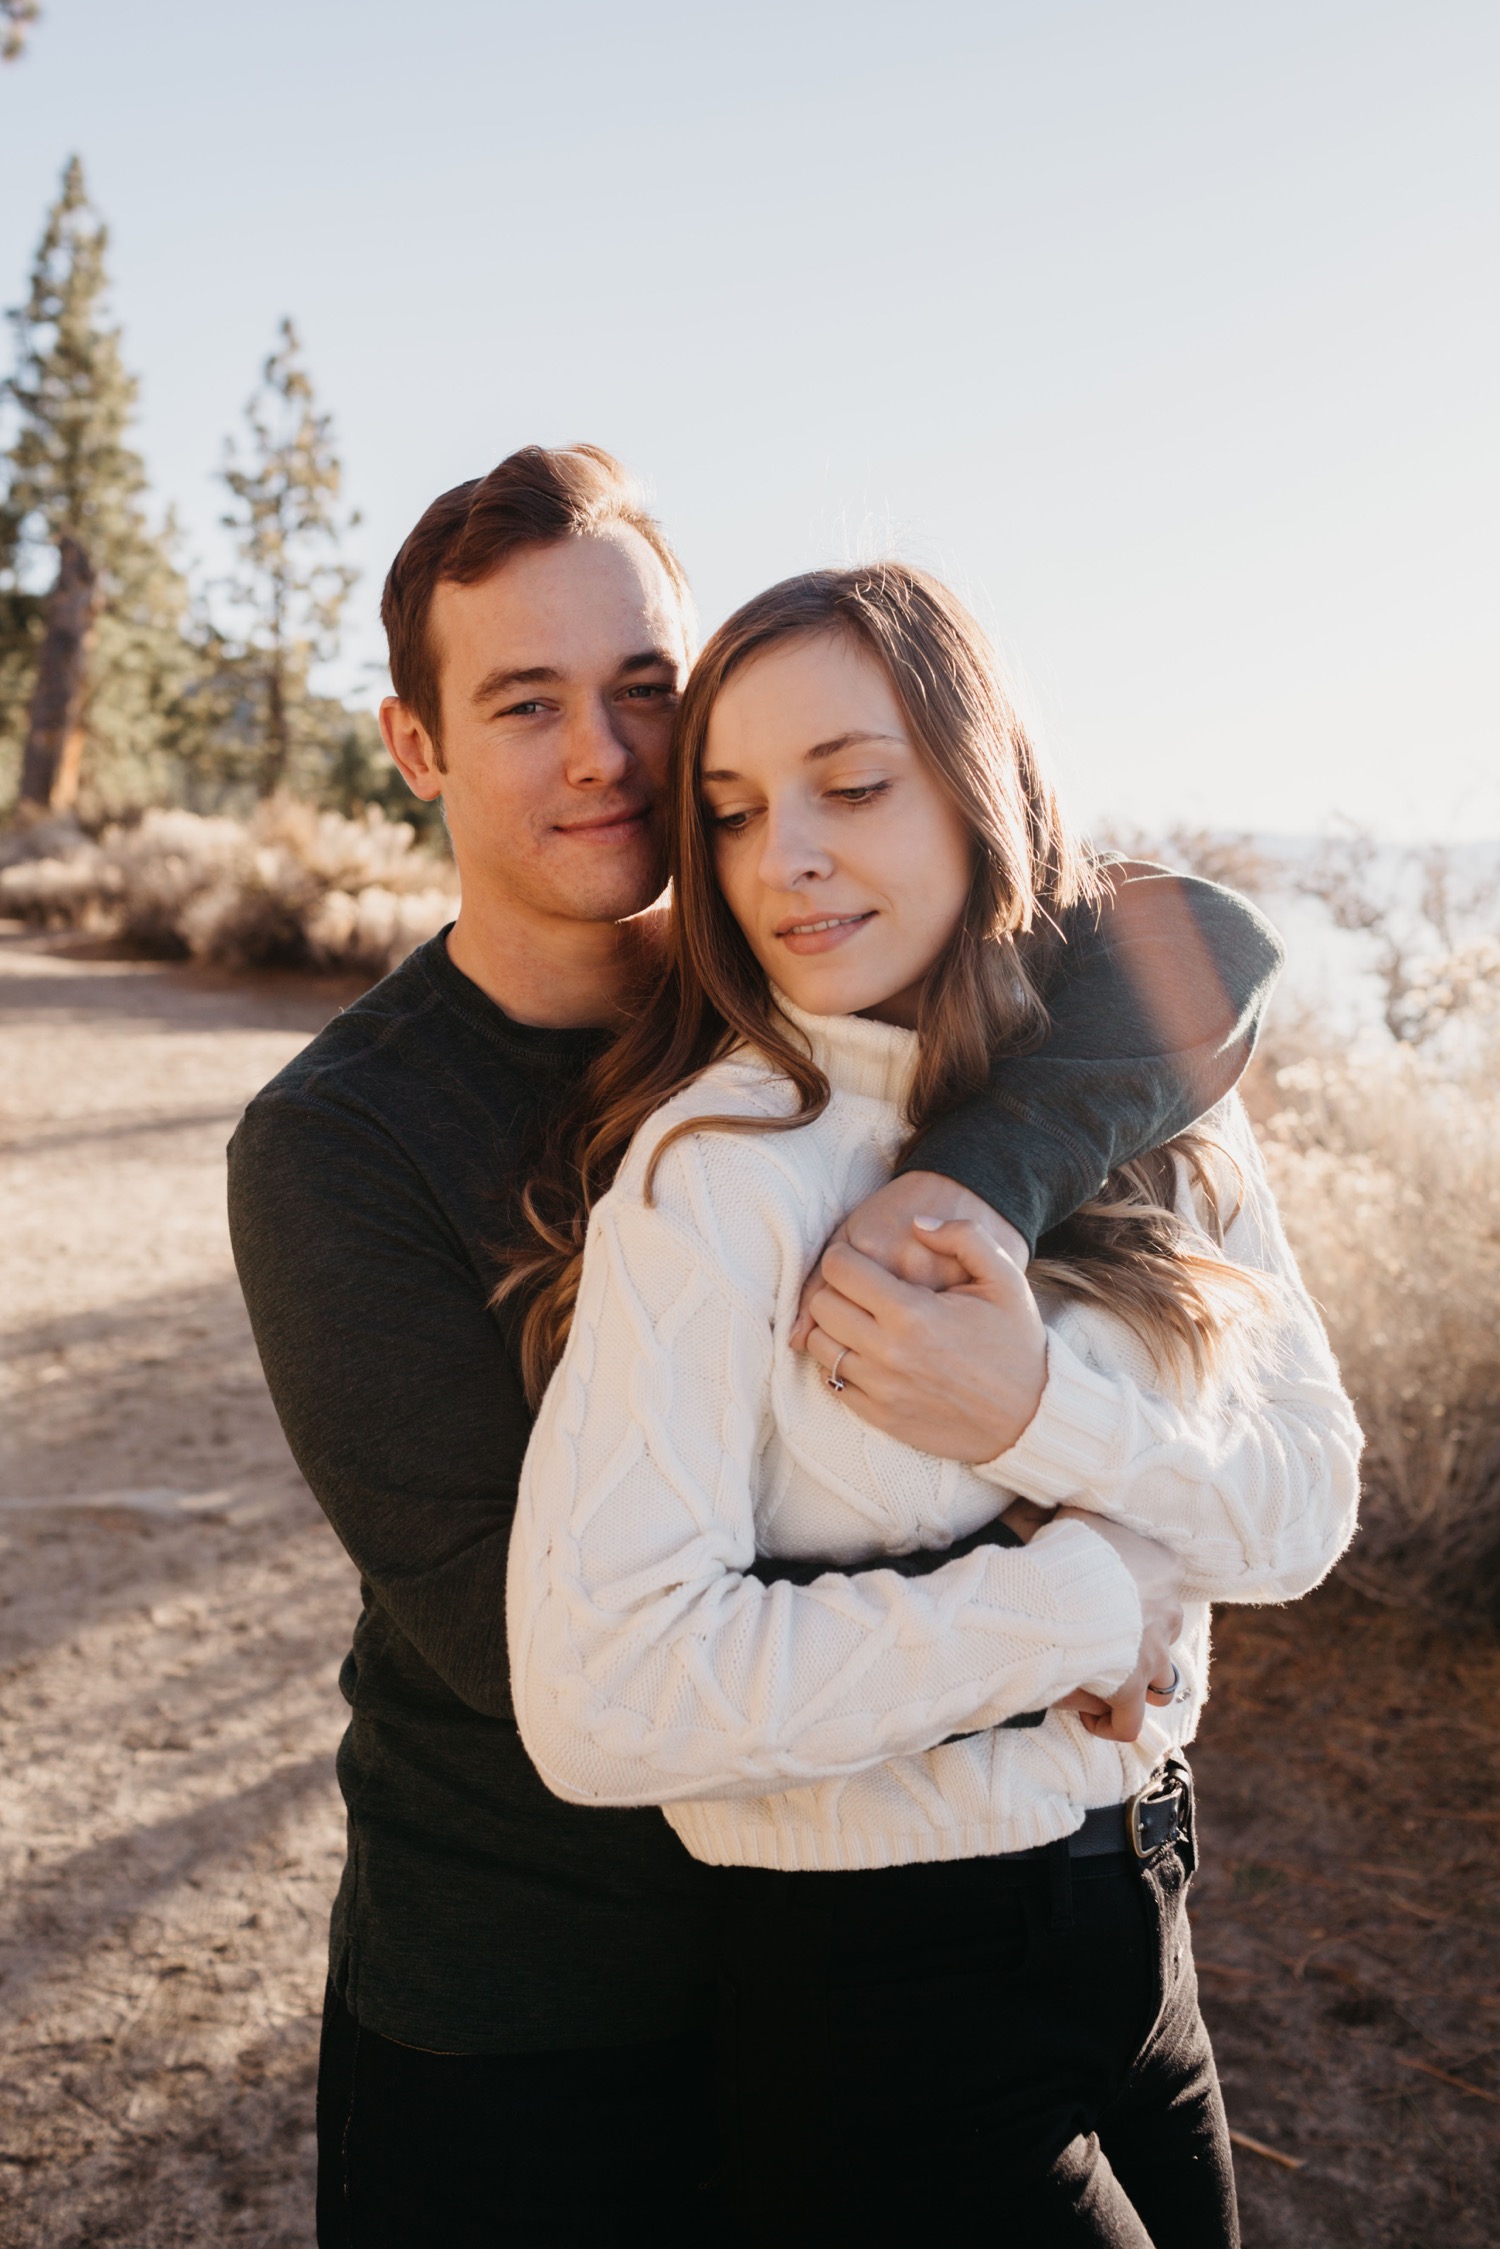 Simone Biles and Jonathan Owens Pose for Romantic Fall Photo Shoot